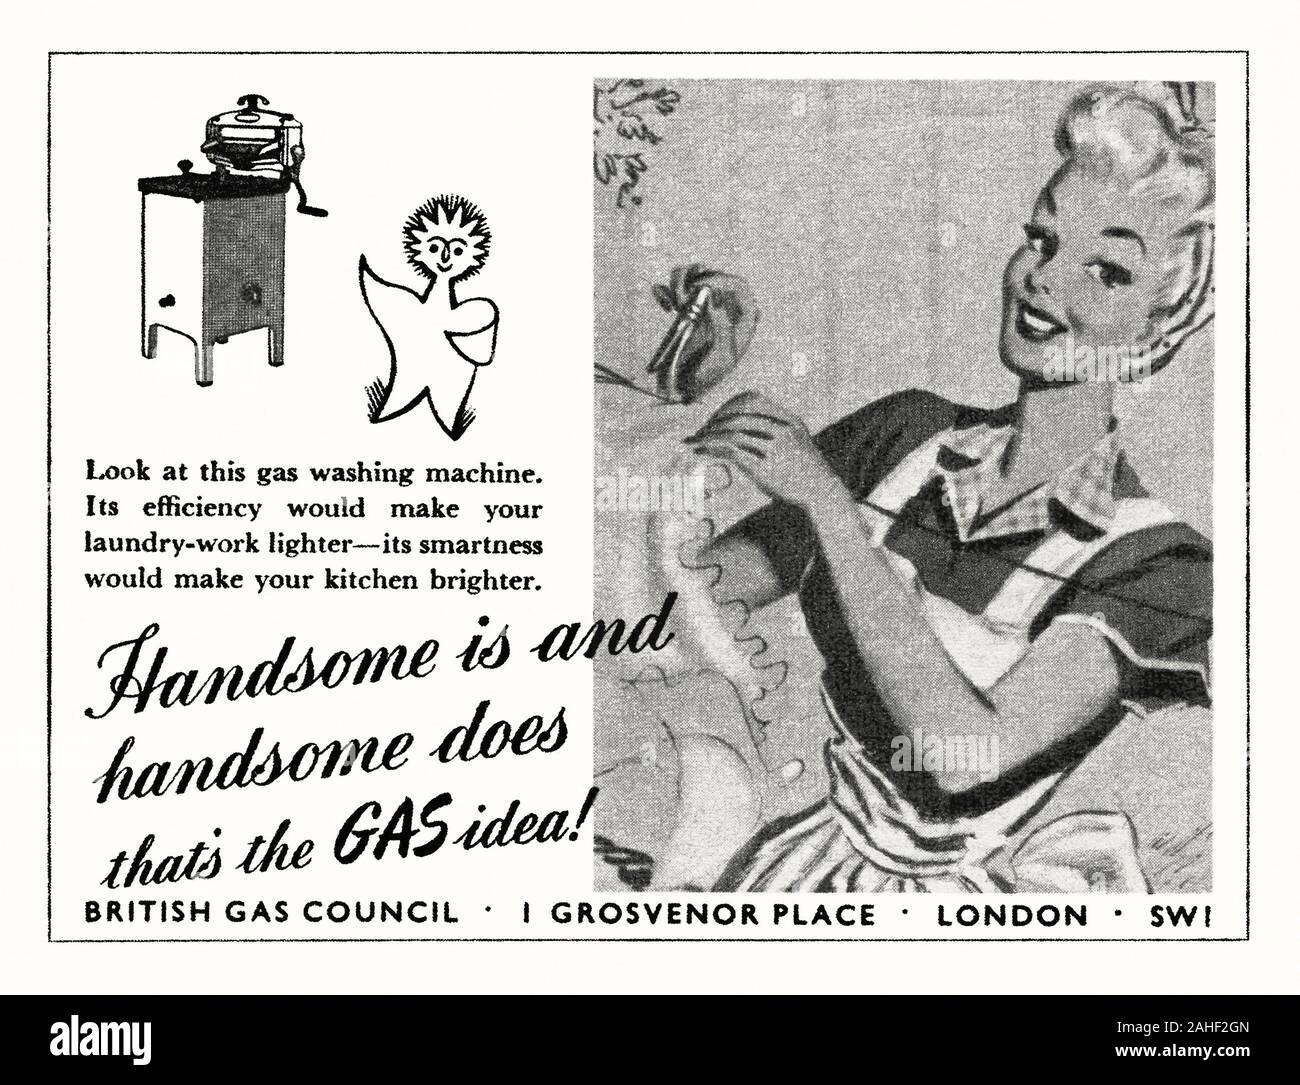 Eine Anzeige für British Gas Rat gasbetriebene Waschmaschine - es erschien in einem Magazin in Großbritannien im Jahre 1946 veröffentlicht. Die Abbildung zeigt eine glückliche Hausfrau heraus hängen Ihre Wäsche. Außerdem ist der Herr Therm marketing Zeichen, ein Symbol, das durch die britische Gaswirtschaft angenommen. Vor weitverbreiteten Strom Kleidung Unterlegscheiben wurden oft Gas oder Benzin angetrieben. Die erste automatische Waschanlage im Jahr 1937 angekommen. Die automatische elektrische Maschine wurde bald die Norm zwar Propangas Waschmaschinen noch für diejenigen, die bereit sind "off grid'. Stockfoto